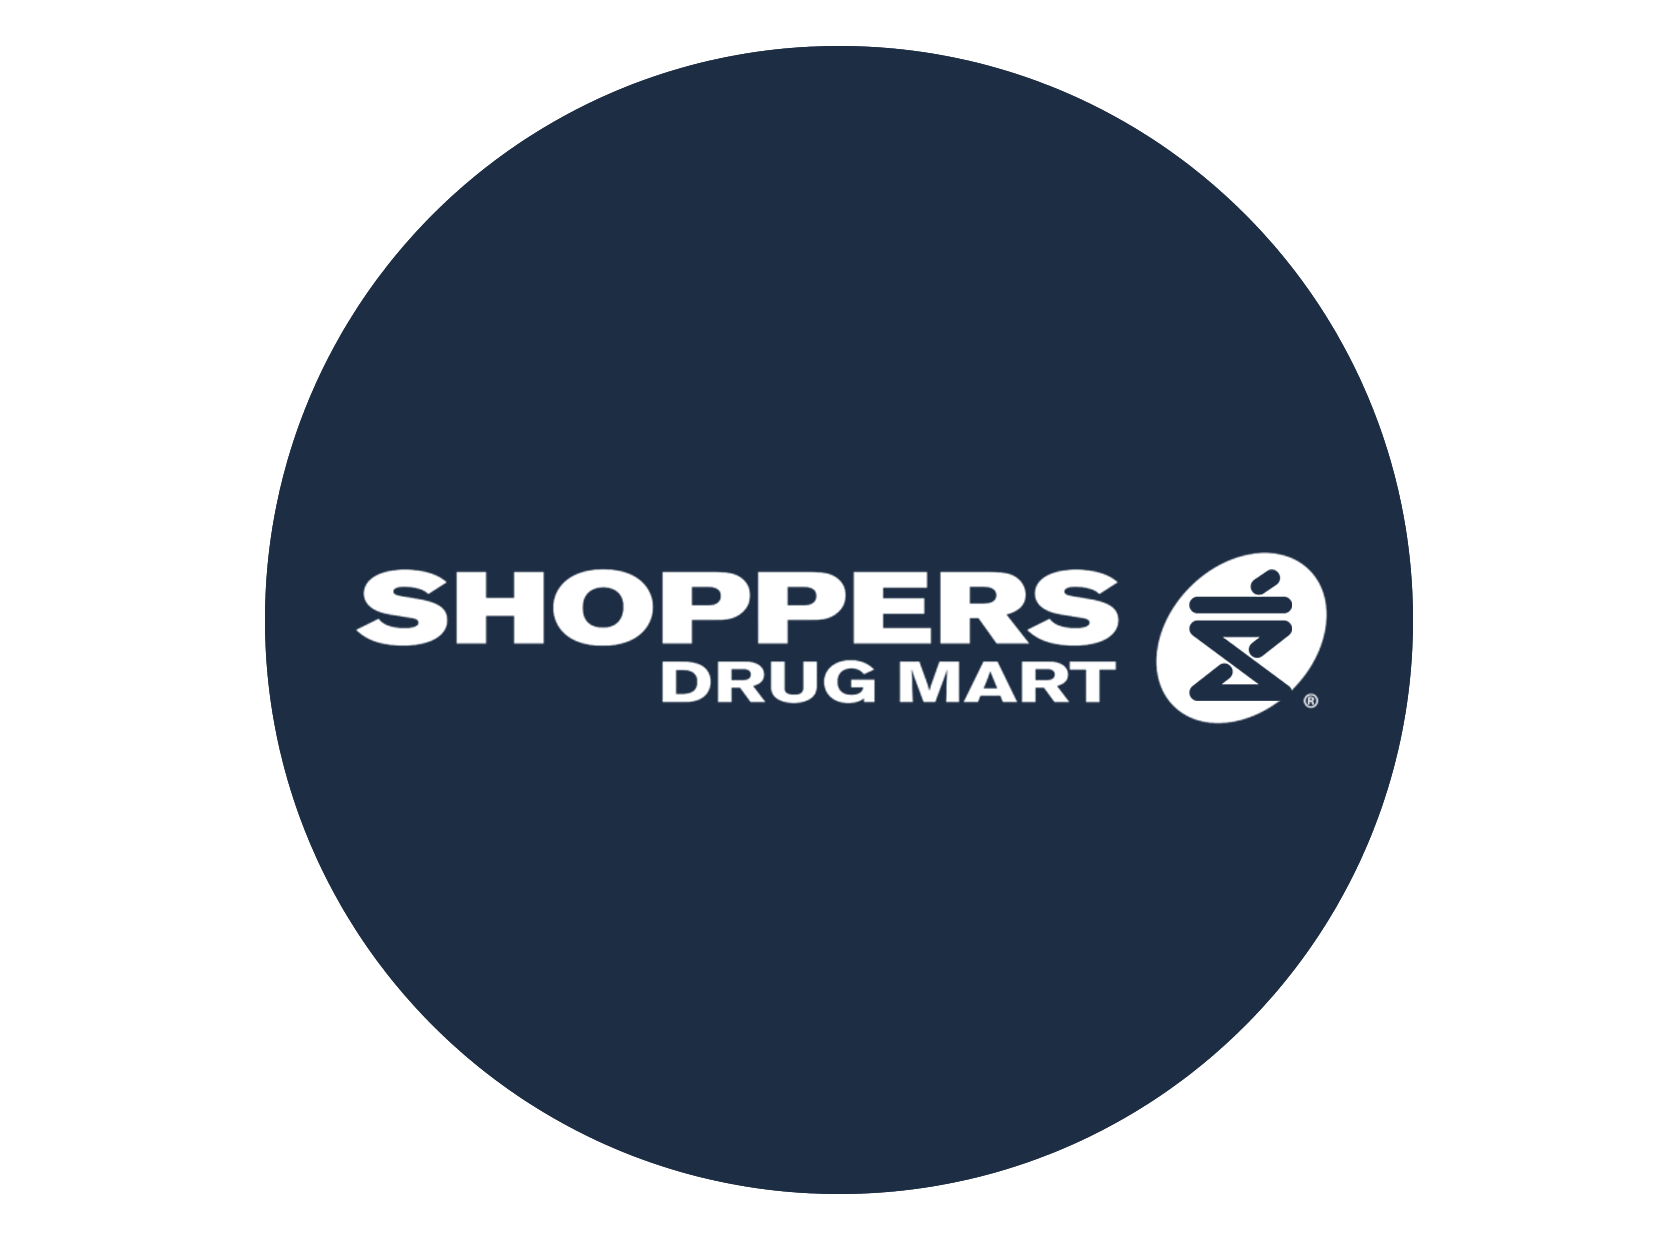 shoppers drug mart logo for mobile billboard campaign